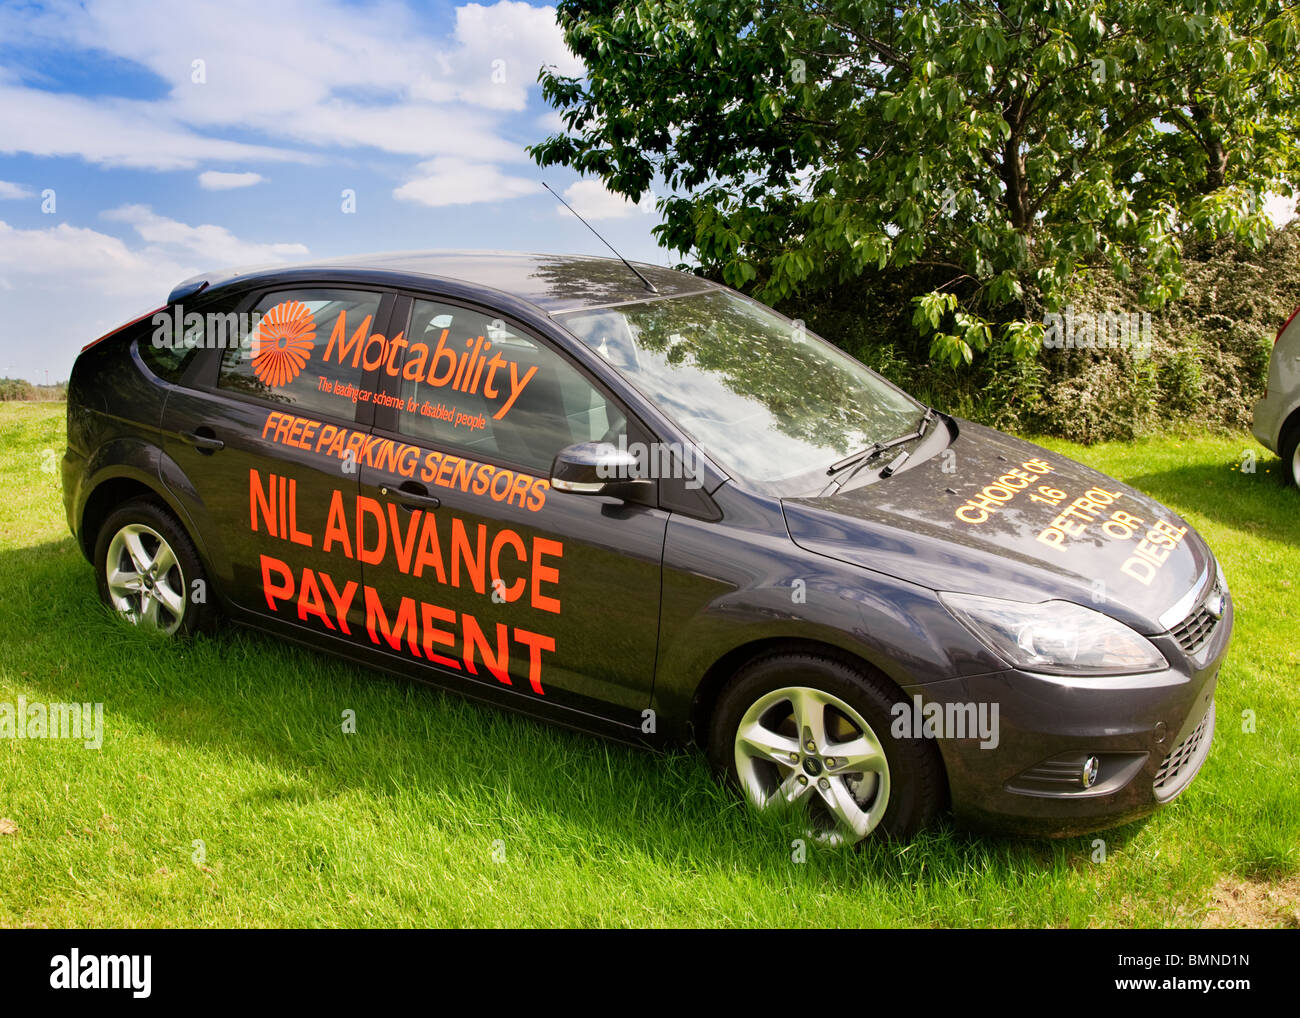 Ein neues Automobil Werbung die britische Motability Auto Regelung. Stockfoto